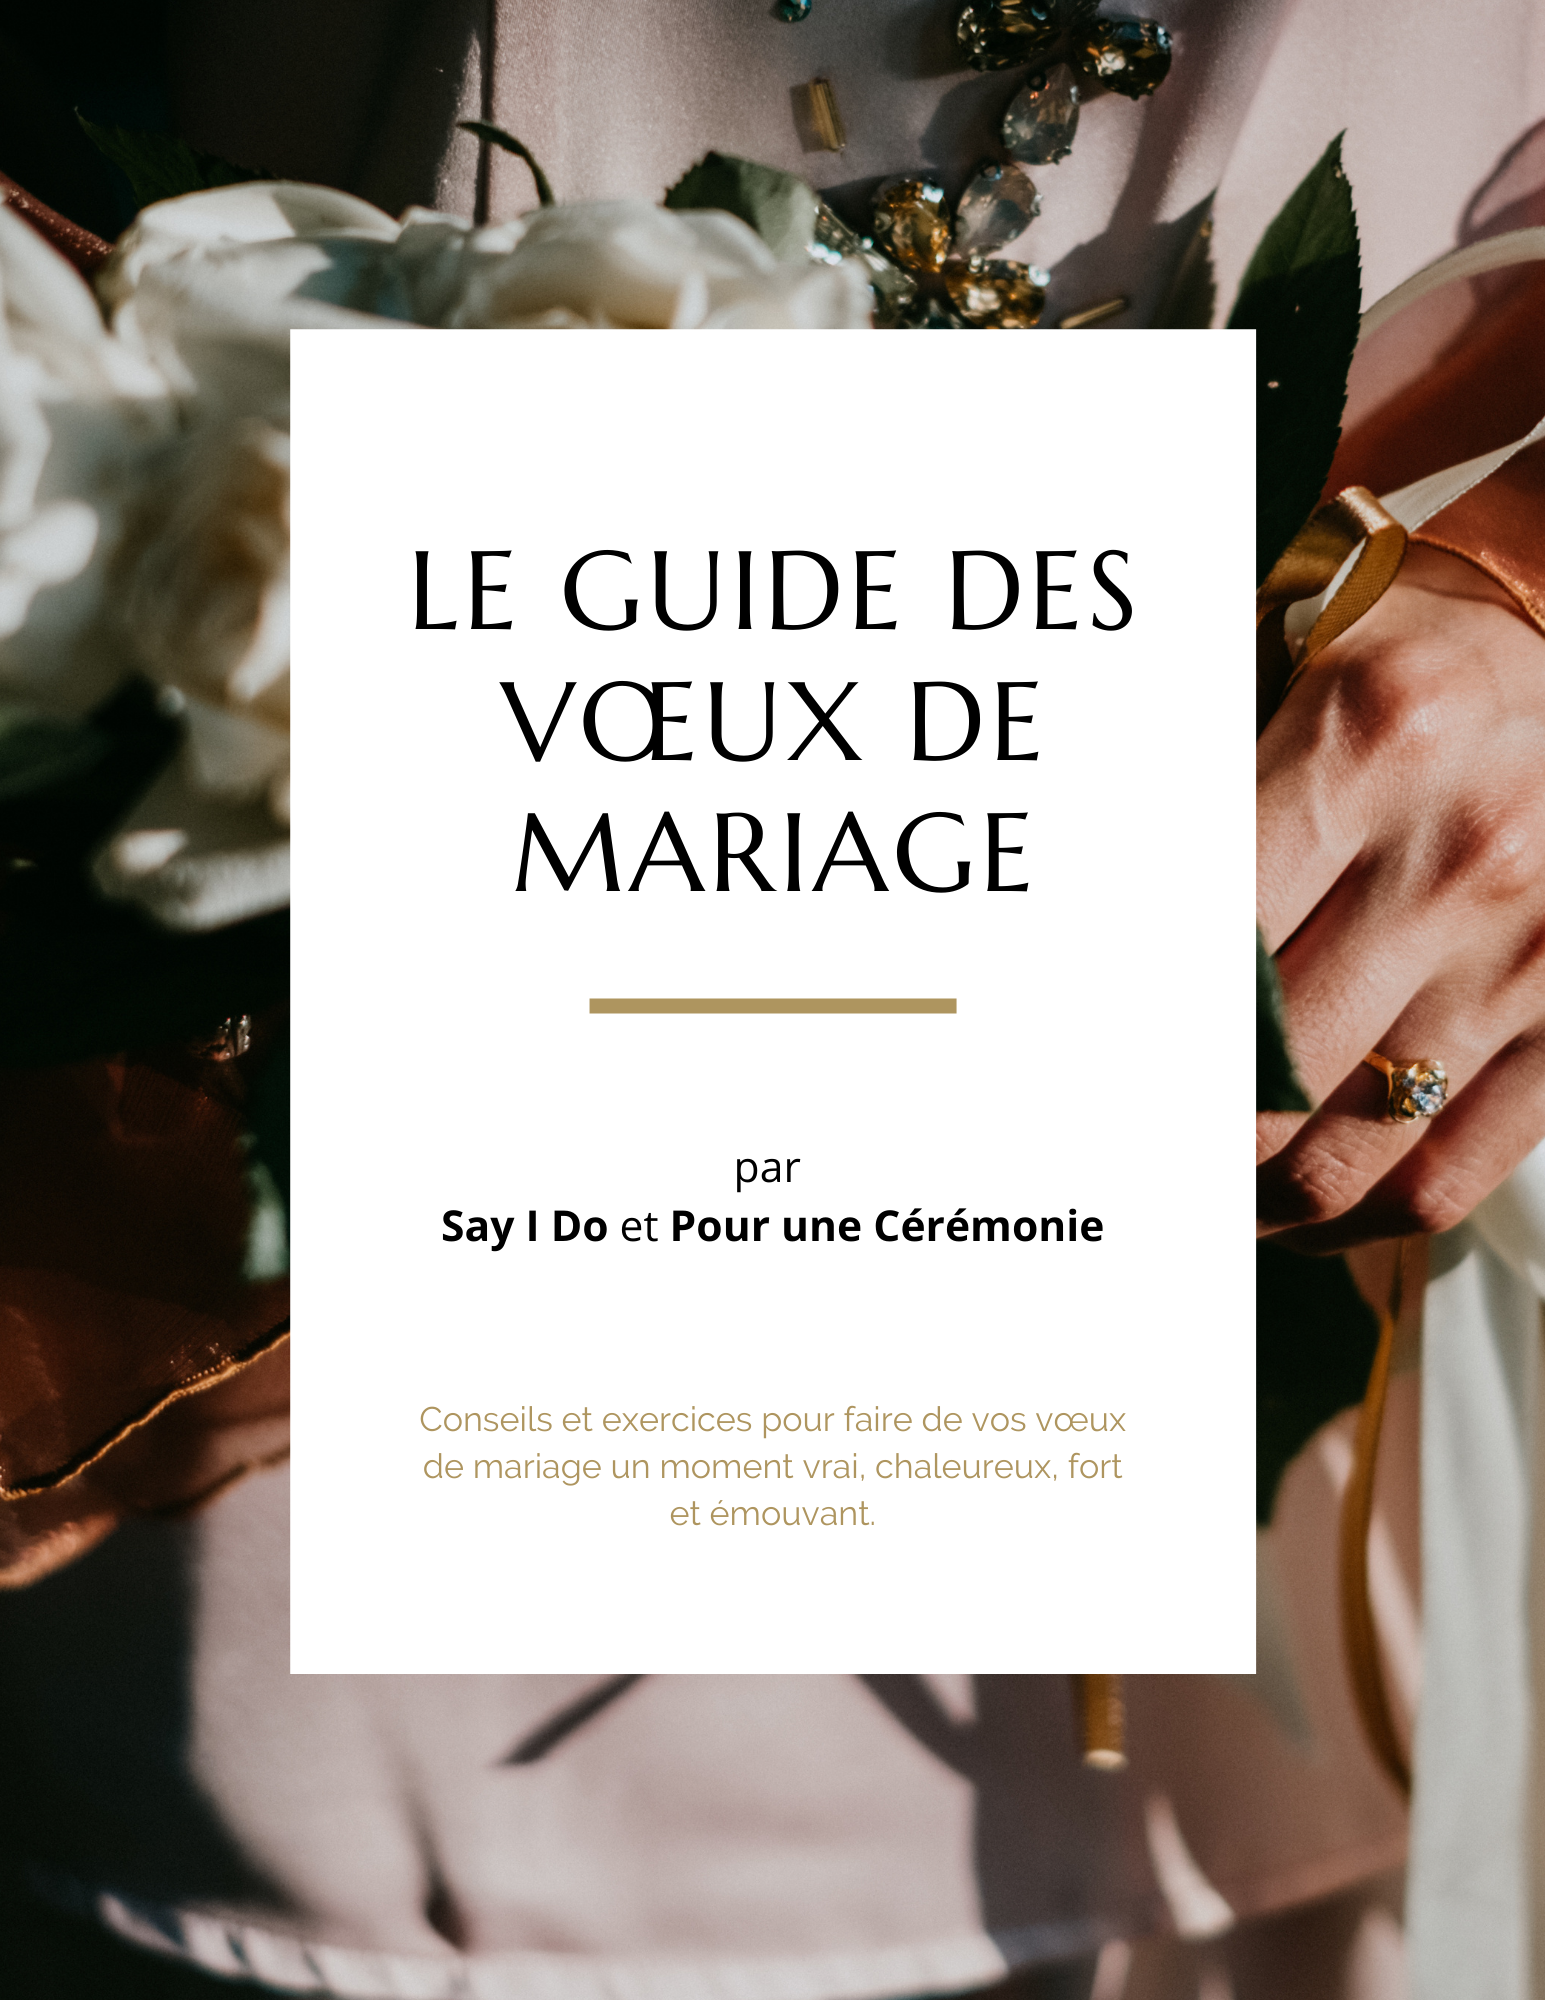 Le guide des vœux de mariage